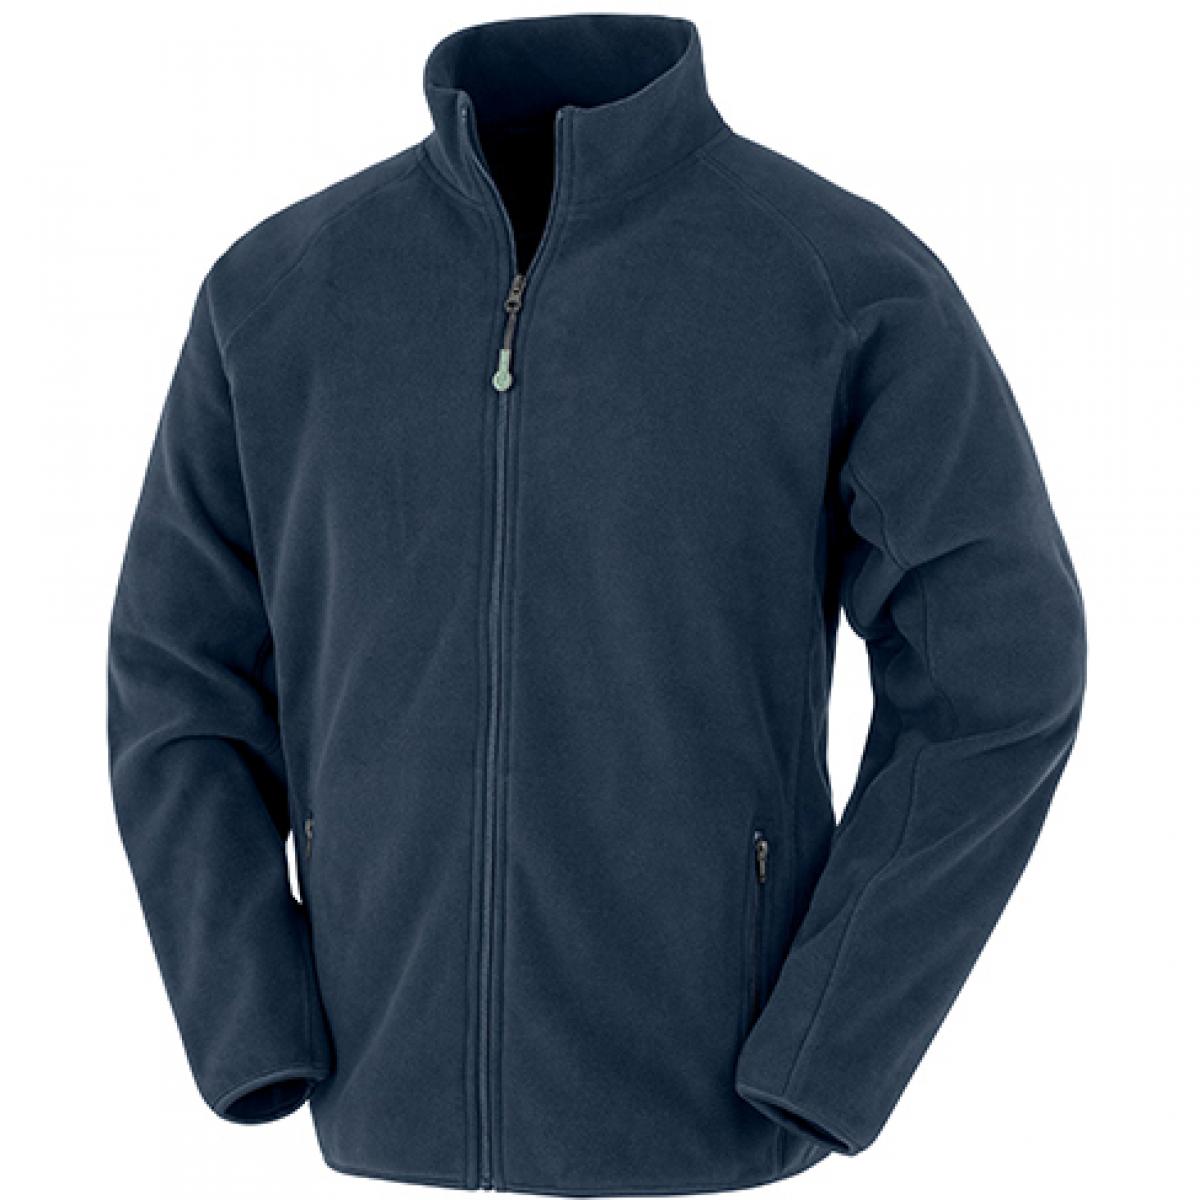 Hersteller: Result Genuine Recycled Herstellernummer: R903X Artikelbezeichnung: Recycled Fleece Polarthermic Jacket Farbe: Navy